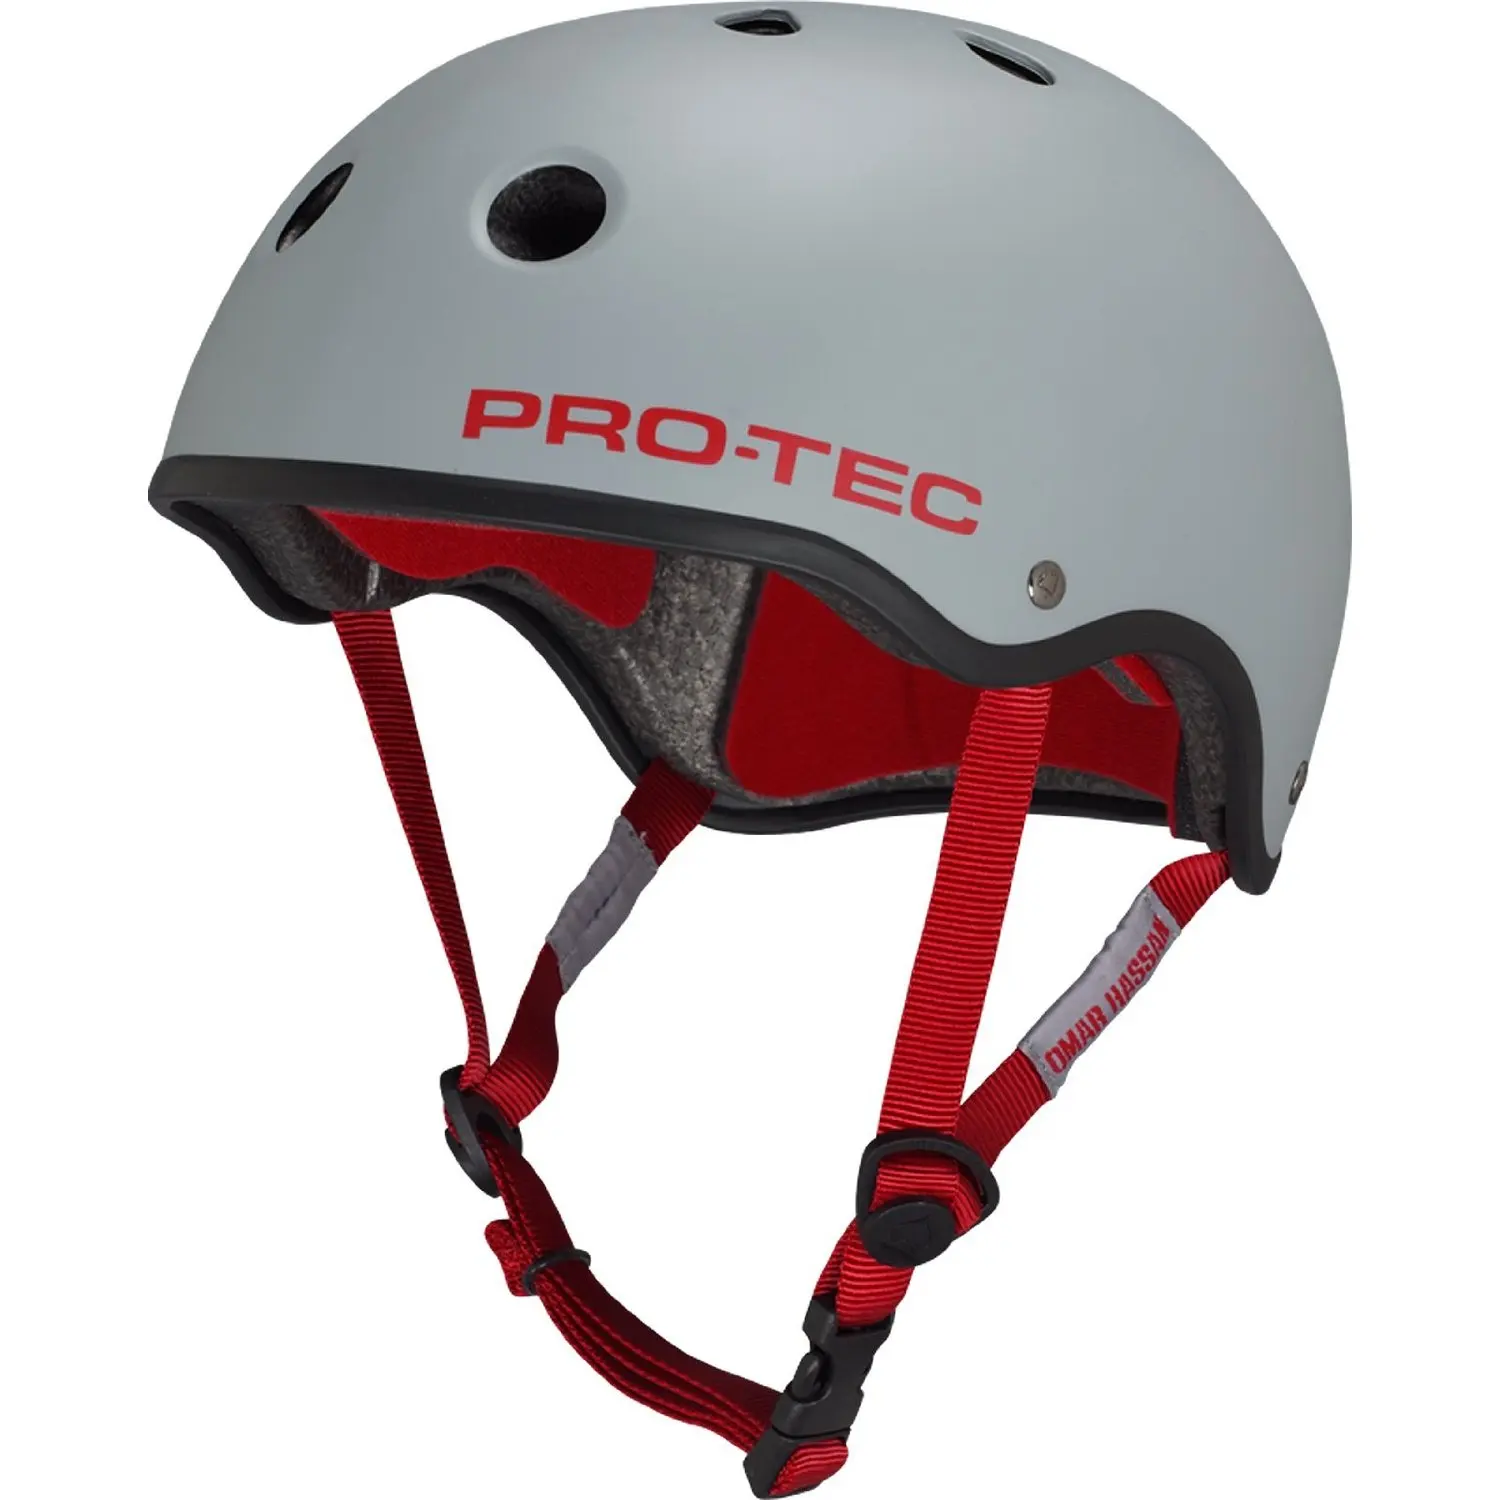 Шлем Pro-Tec Classic красный. Шлем Pro-Tec Classic Skate Satin Black. Шлем Pro-Tec Classic Skate Matte Gray, s. Pro Tec Commander шлем. Protec viking